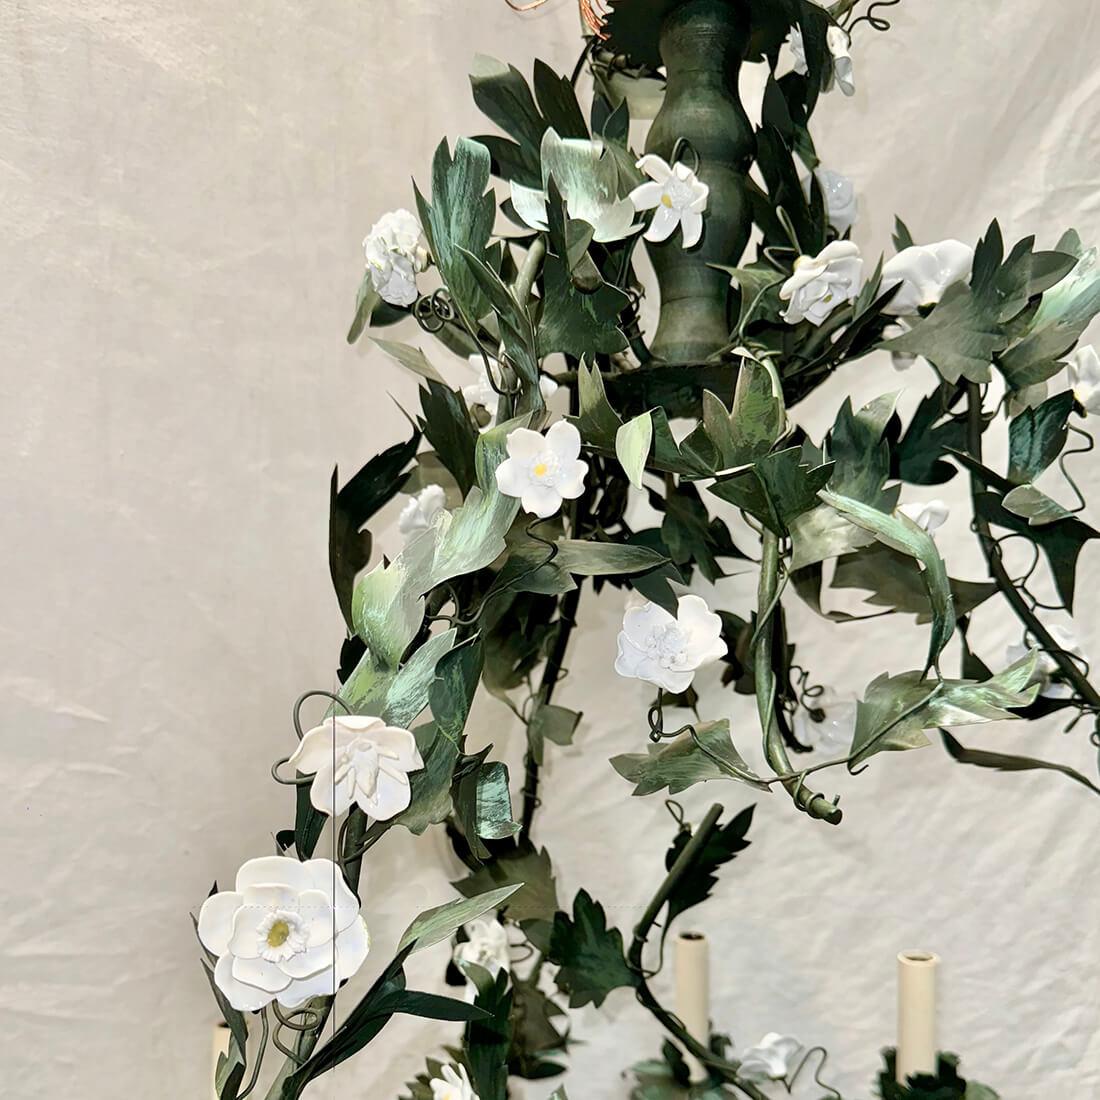 Lustre italien en métal peint, datant des années 1920, avec 16 lumières et des fleurs en porcelaine.

Mesures :
Chute : 39